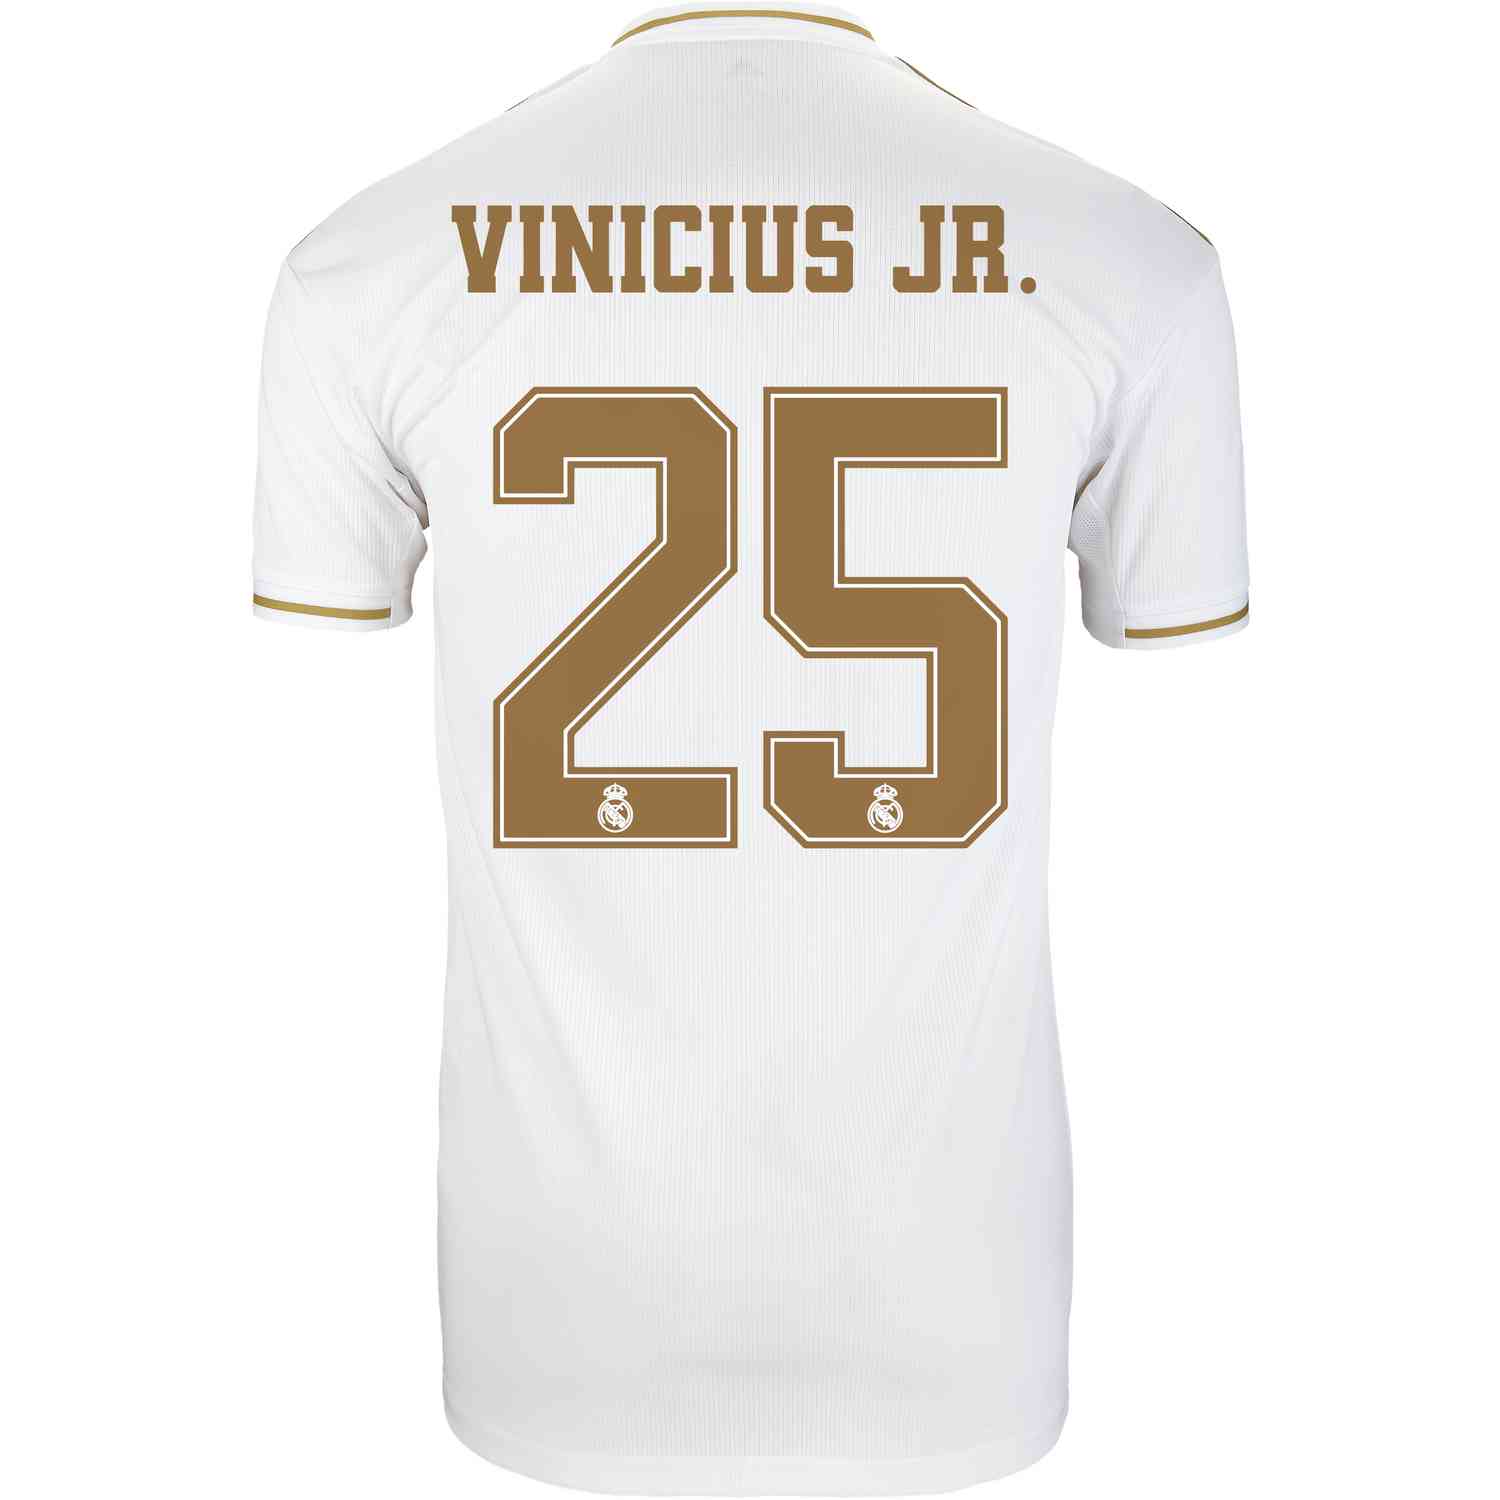 vinicius jr jersey